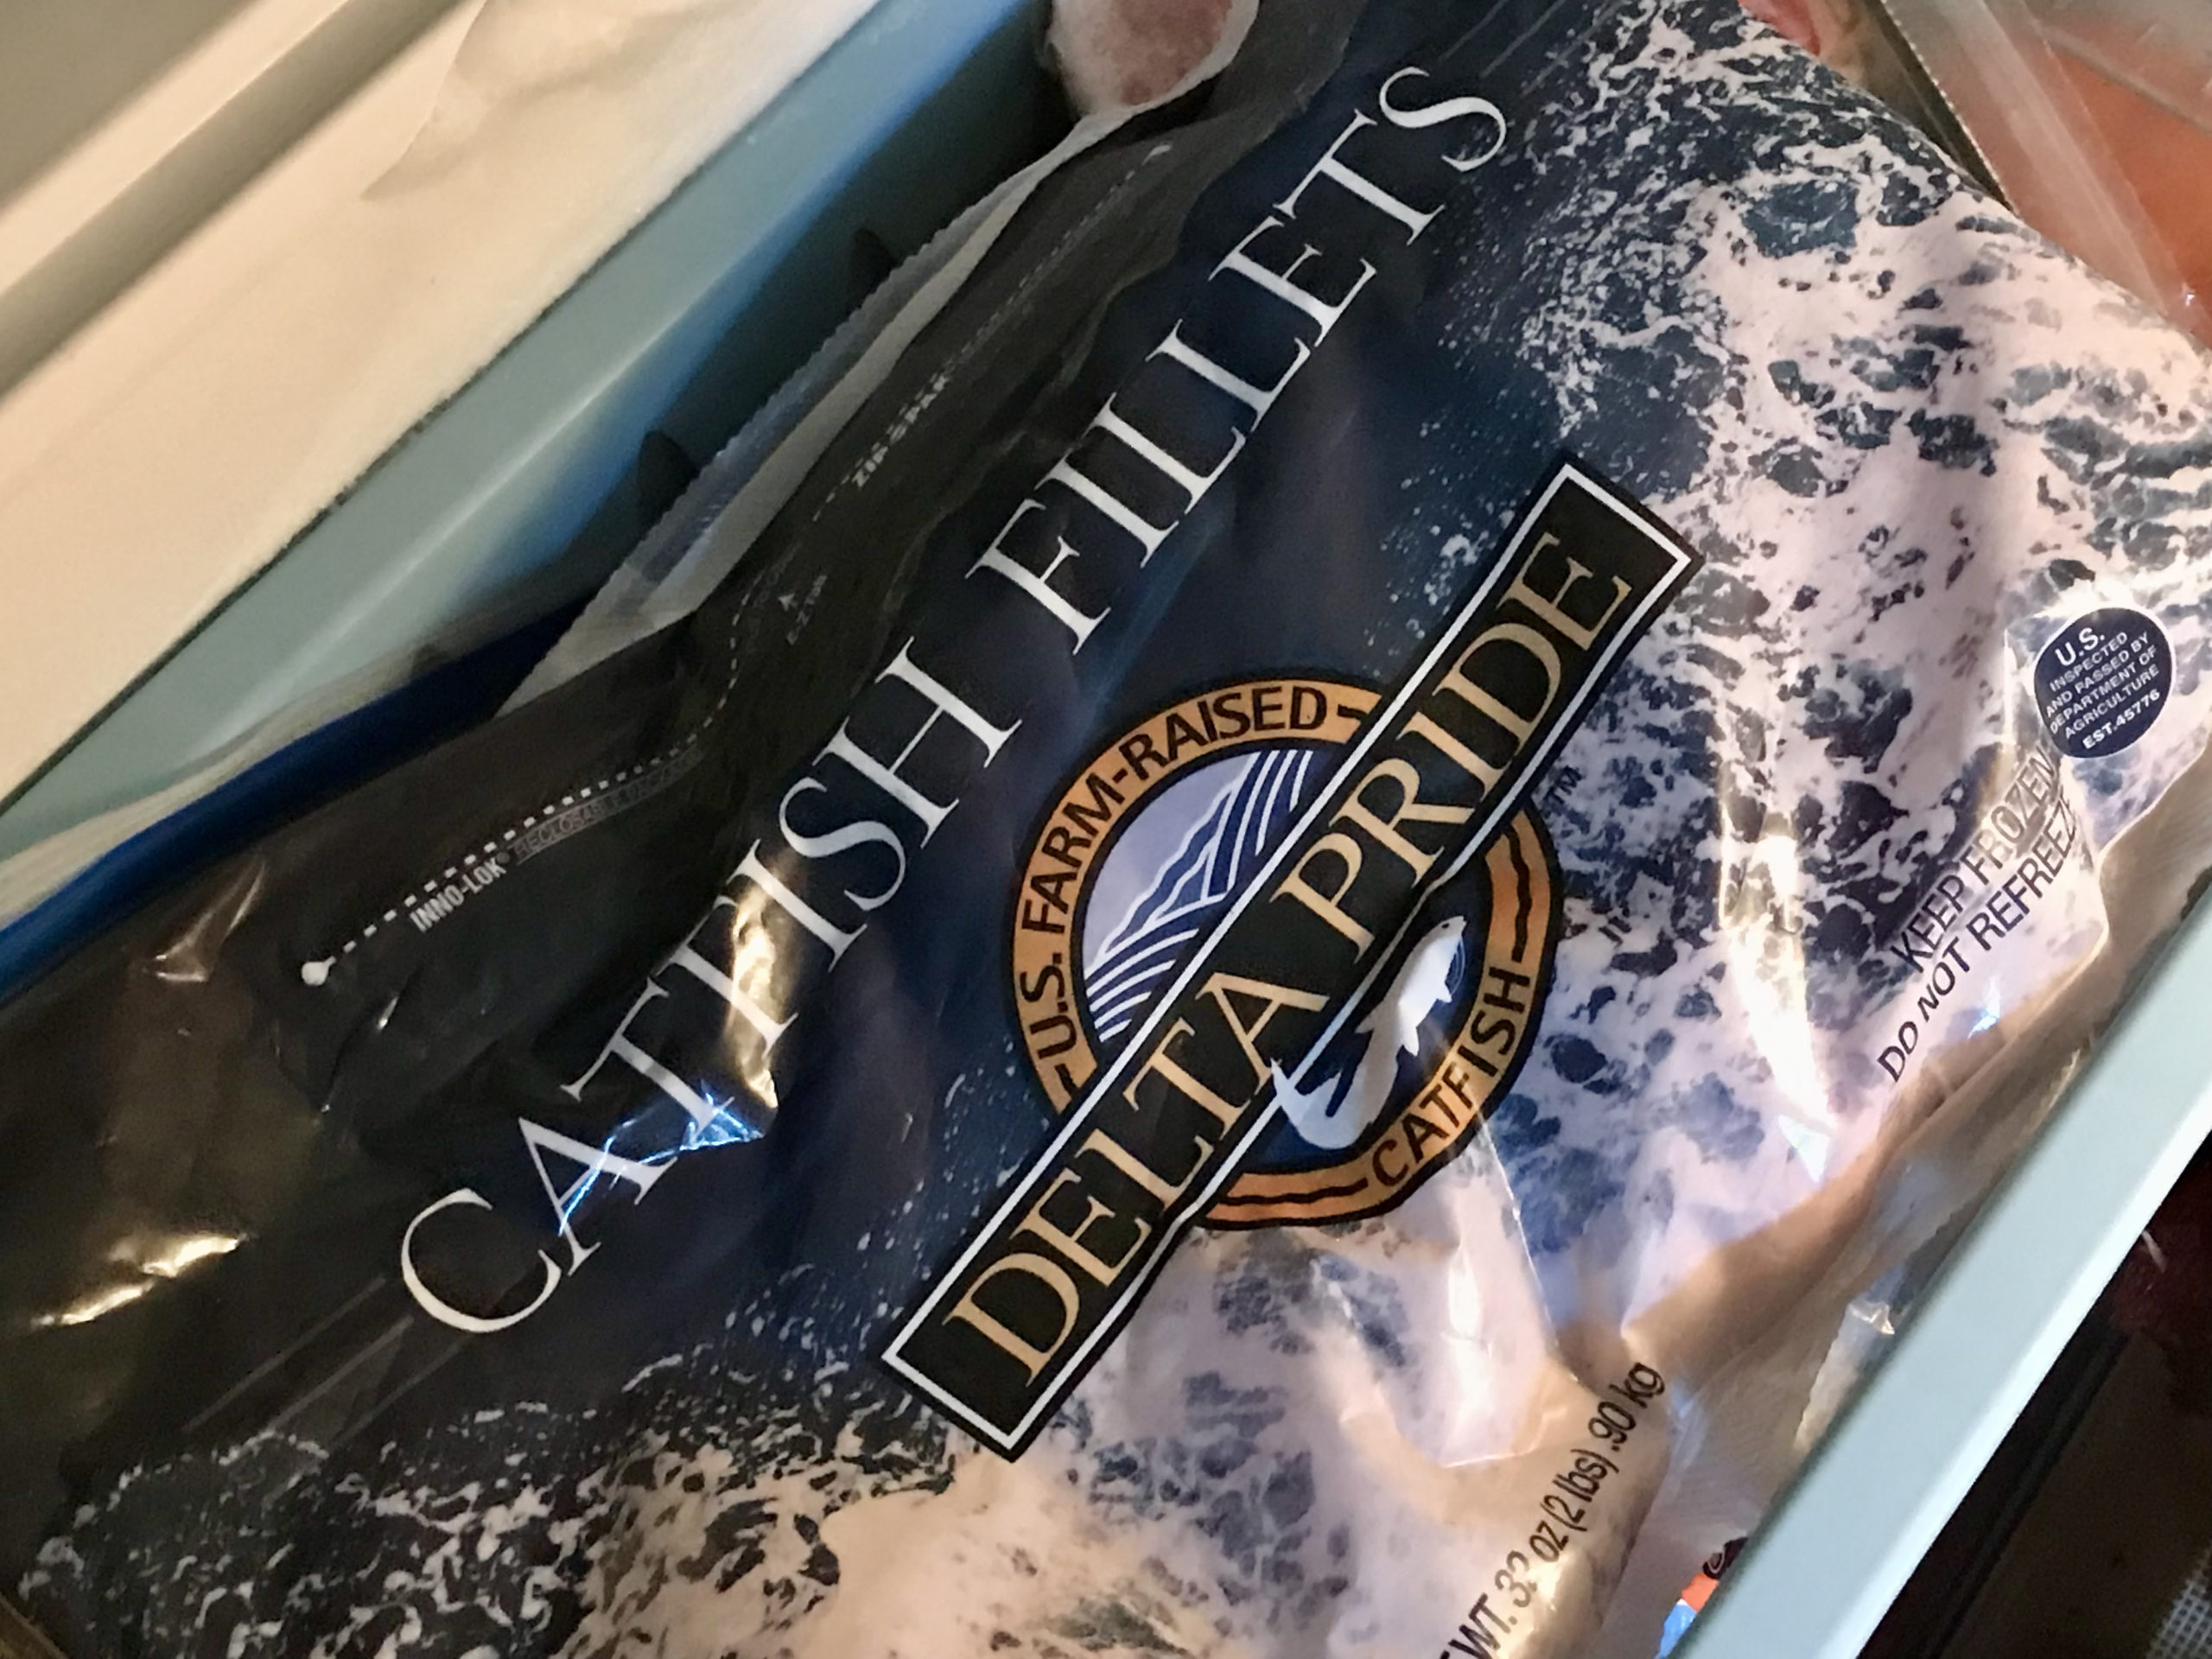 A bag of frozen catfish fillets.